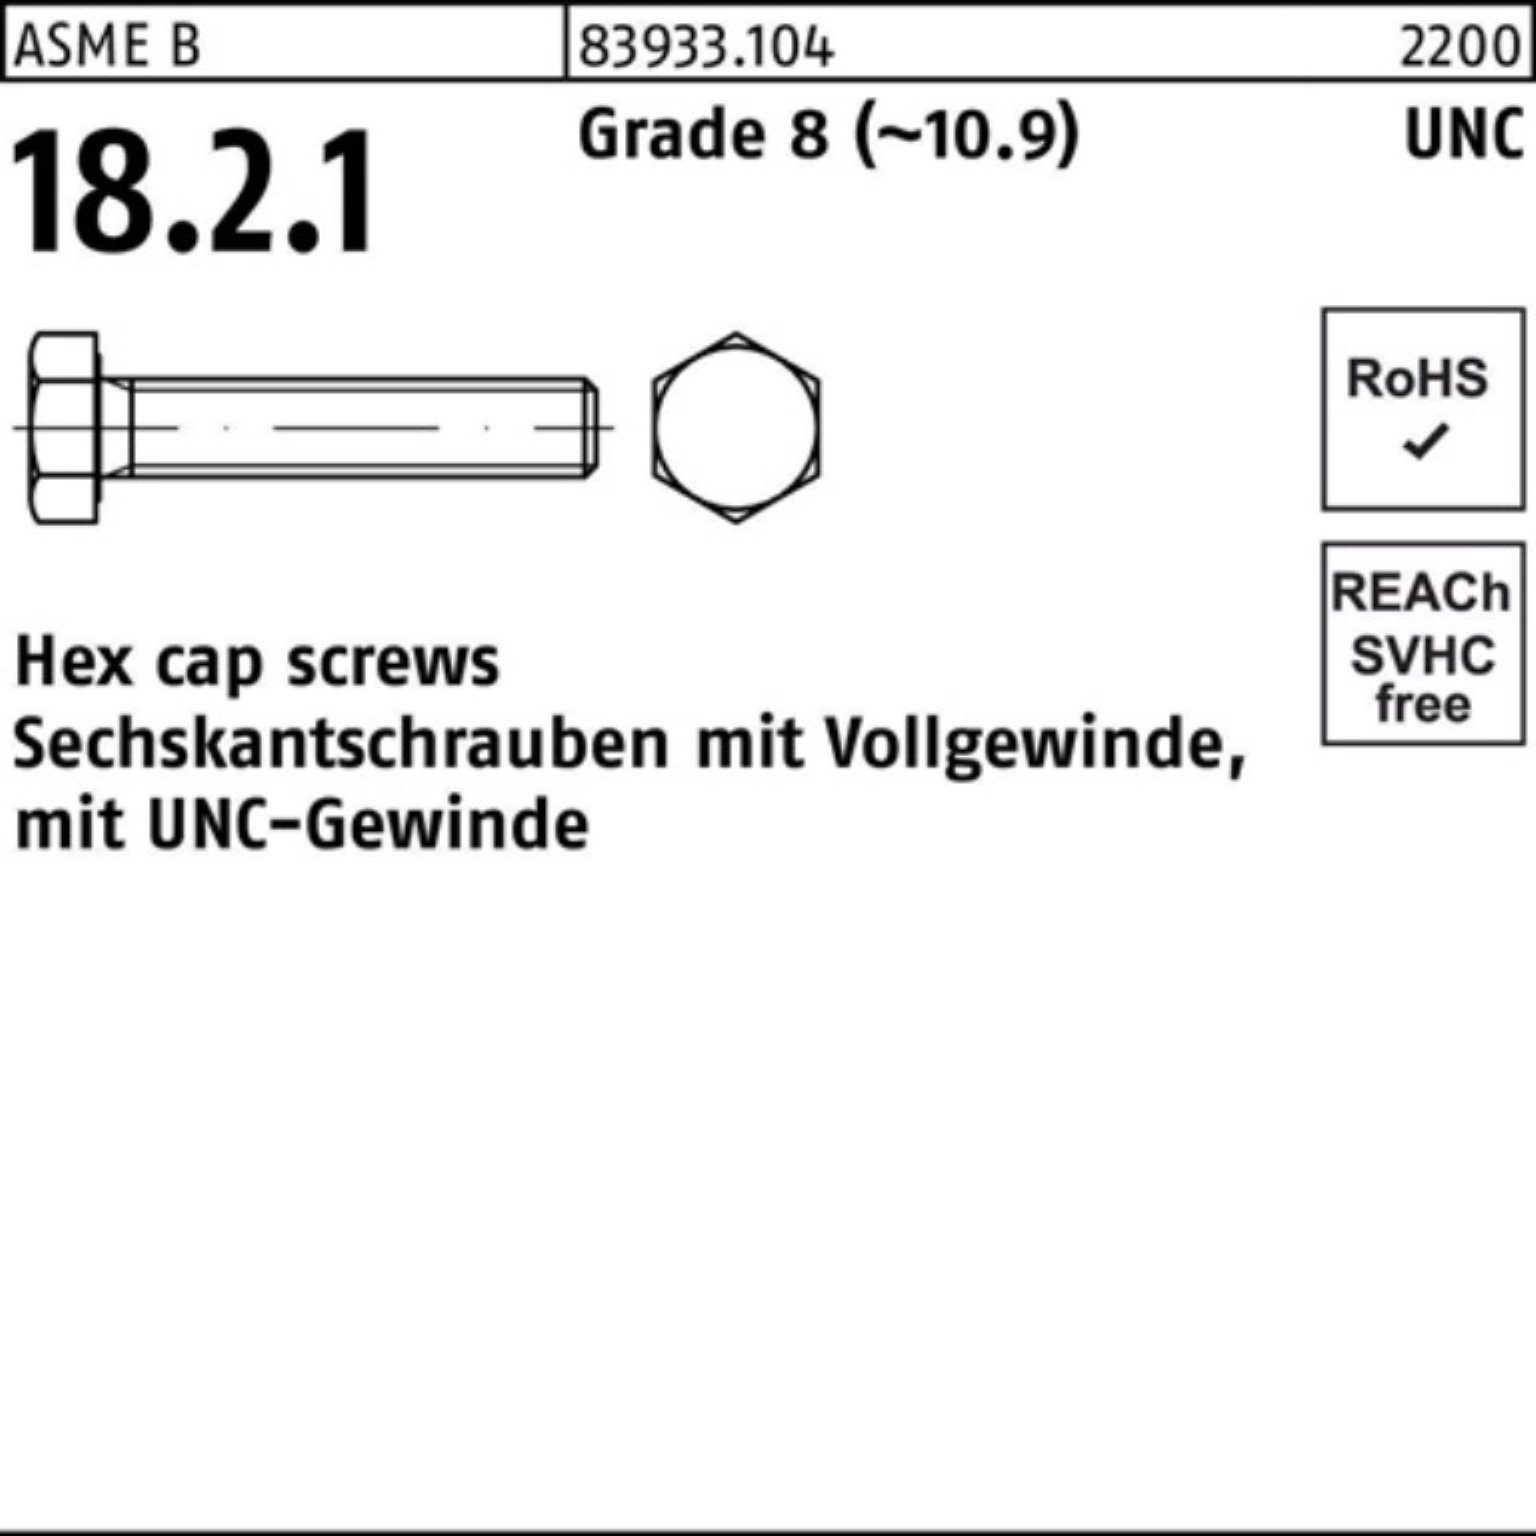 Reyher Sechskantschraube 100er Pack Sechskantschraube R 83933 UNC-Gewinde VG 1/4x 1 Grade 8 (1